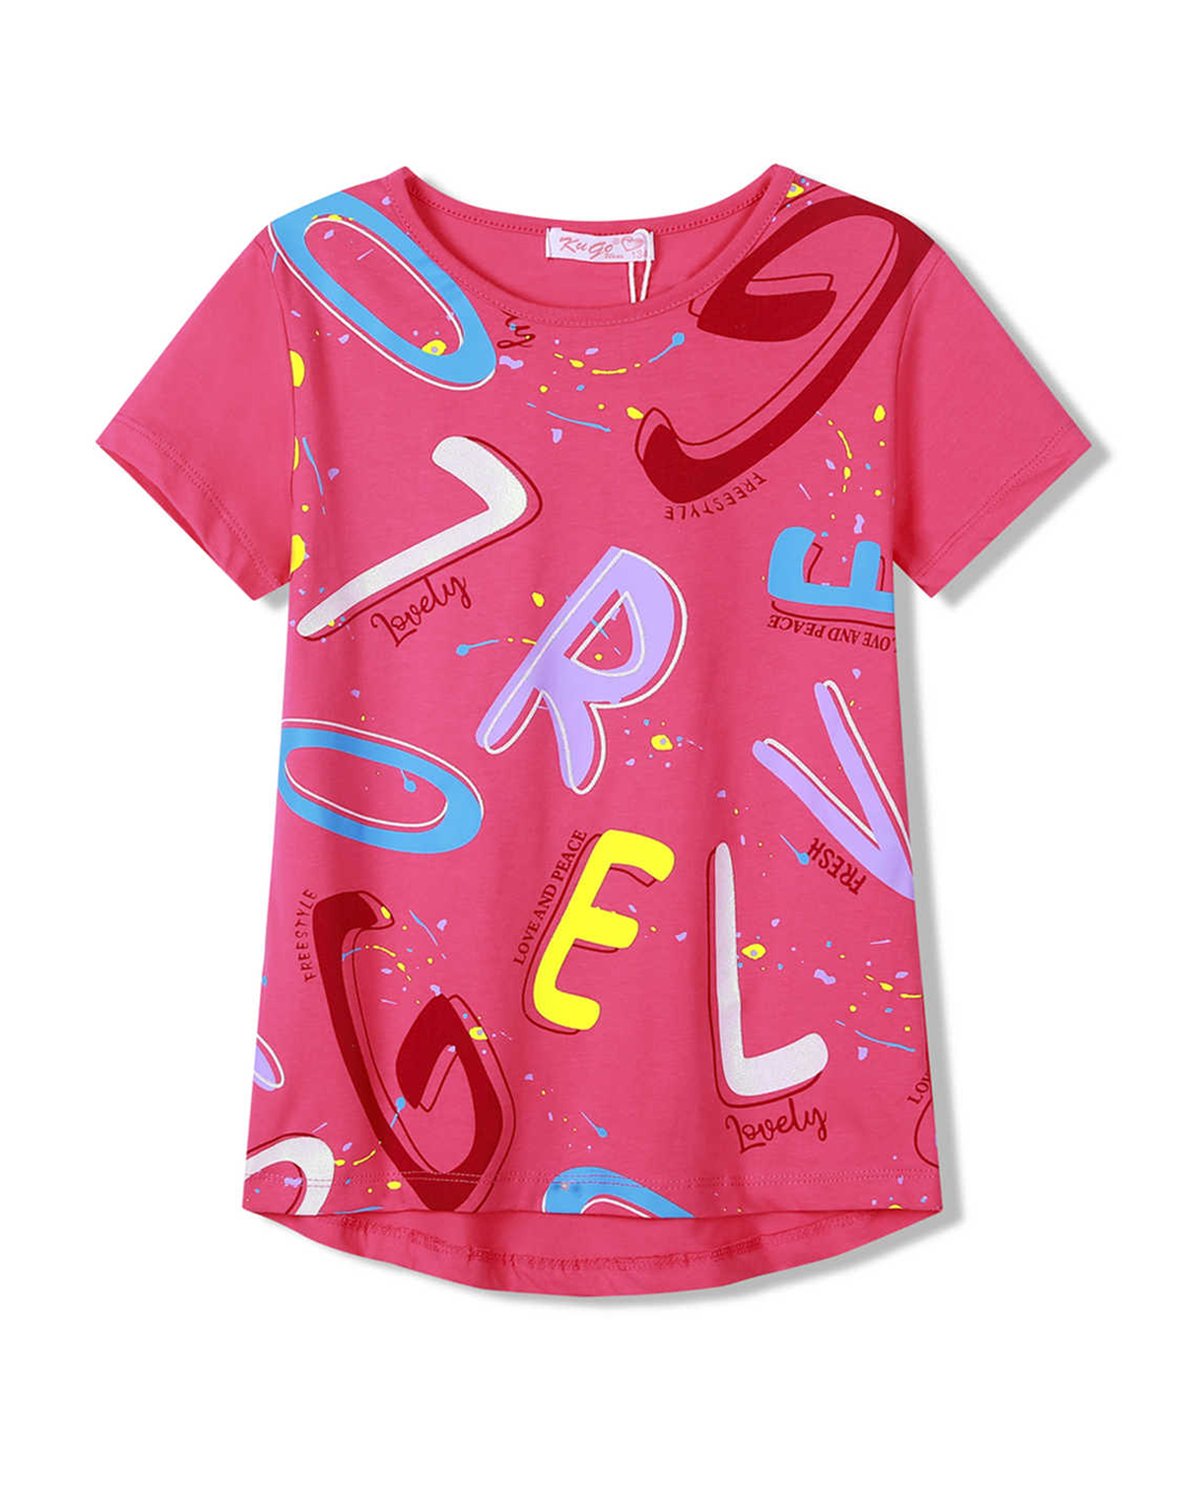 Dívčí tričko - KUGO HC9335, růžová Barva: Růžová, Velikost: 164